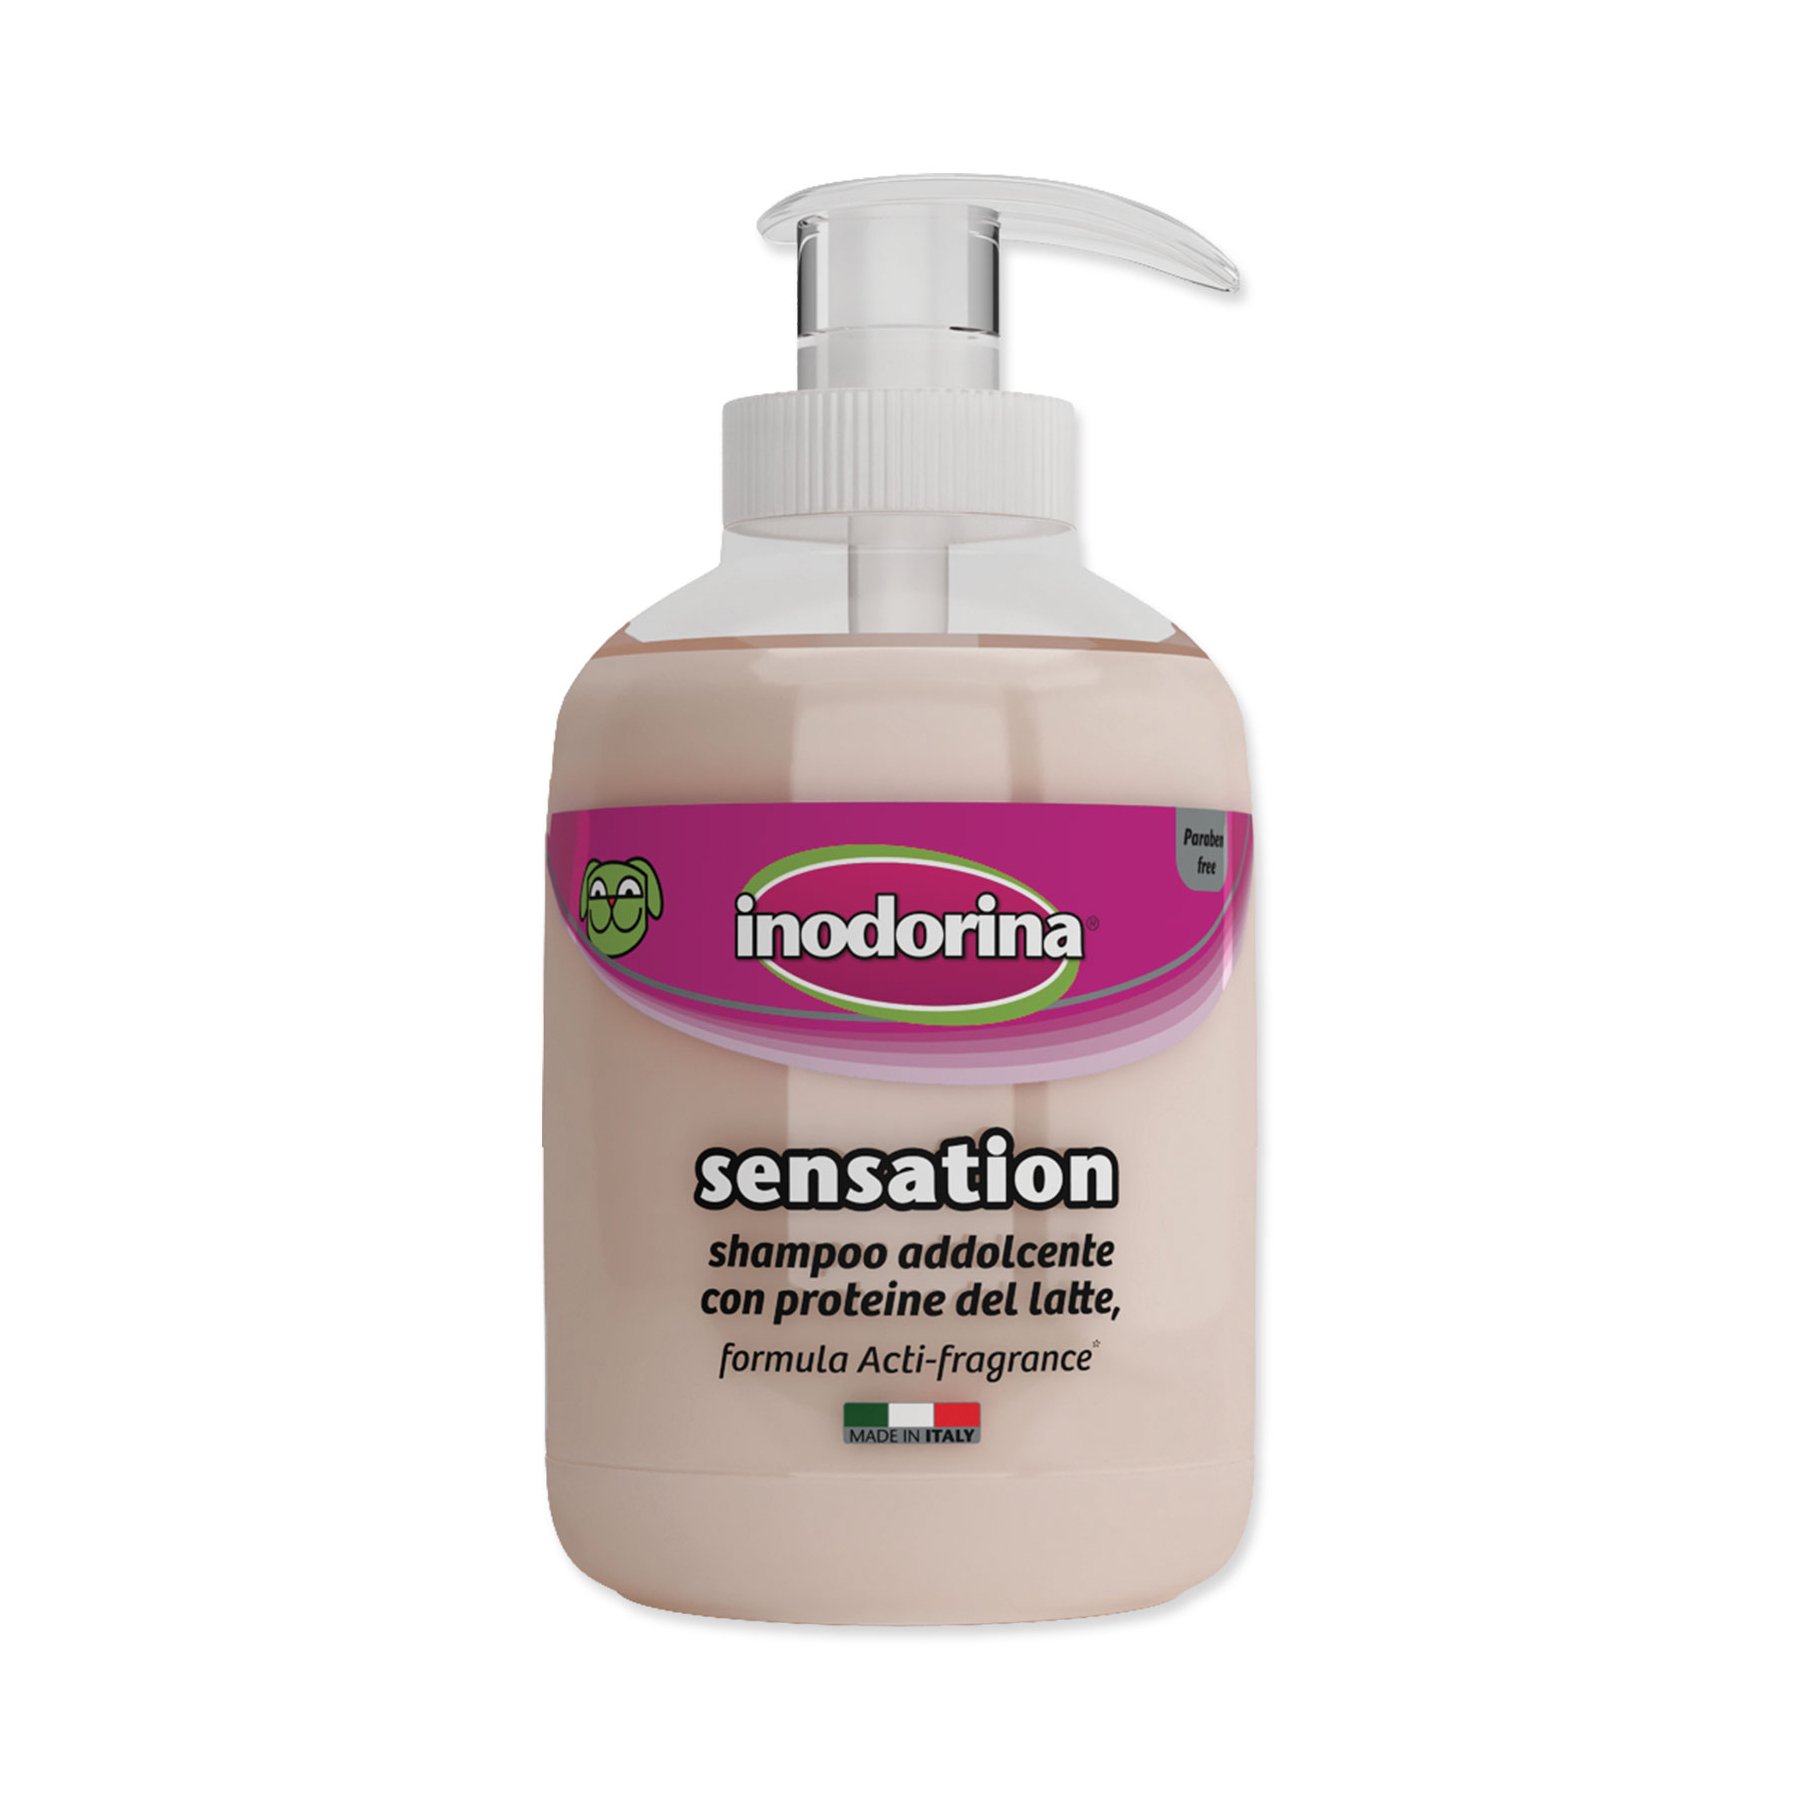 Inodorina Sensation zklidňující šampon 300 ml Inodorina